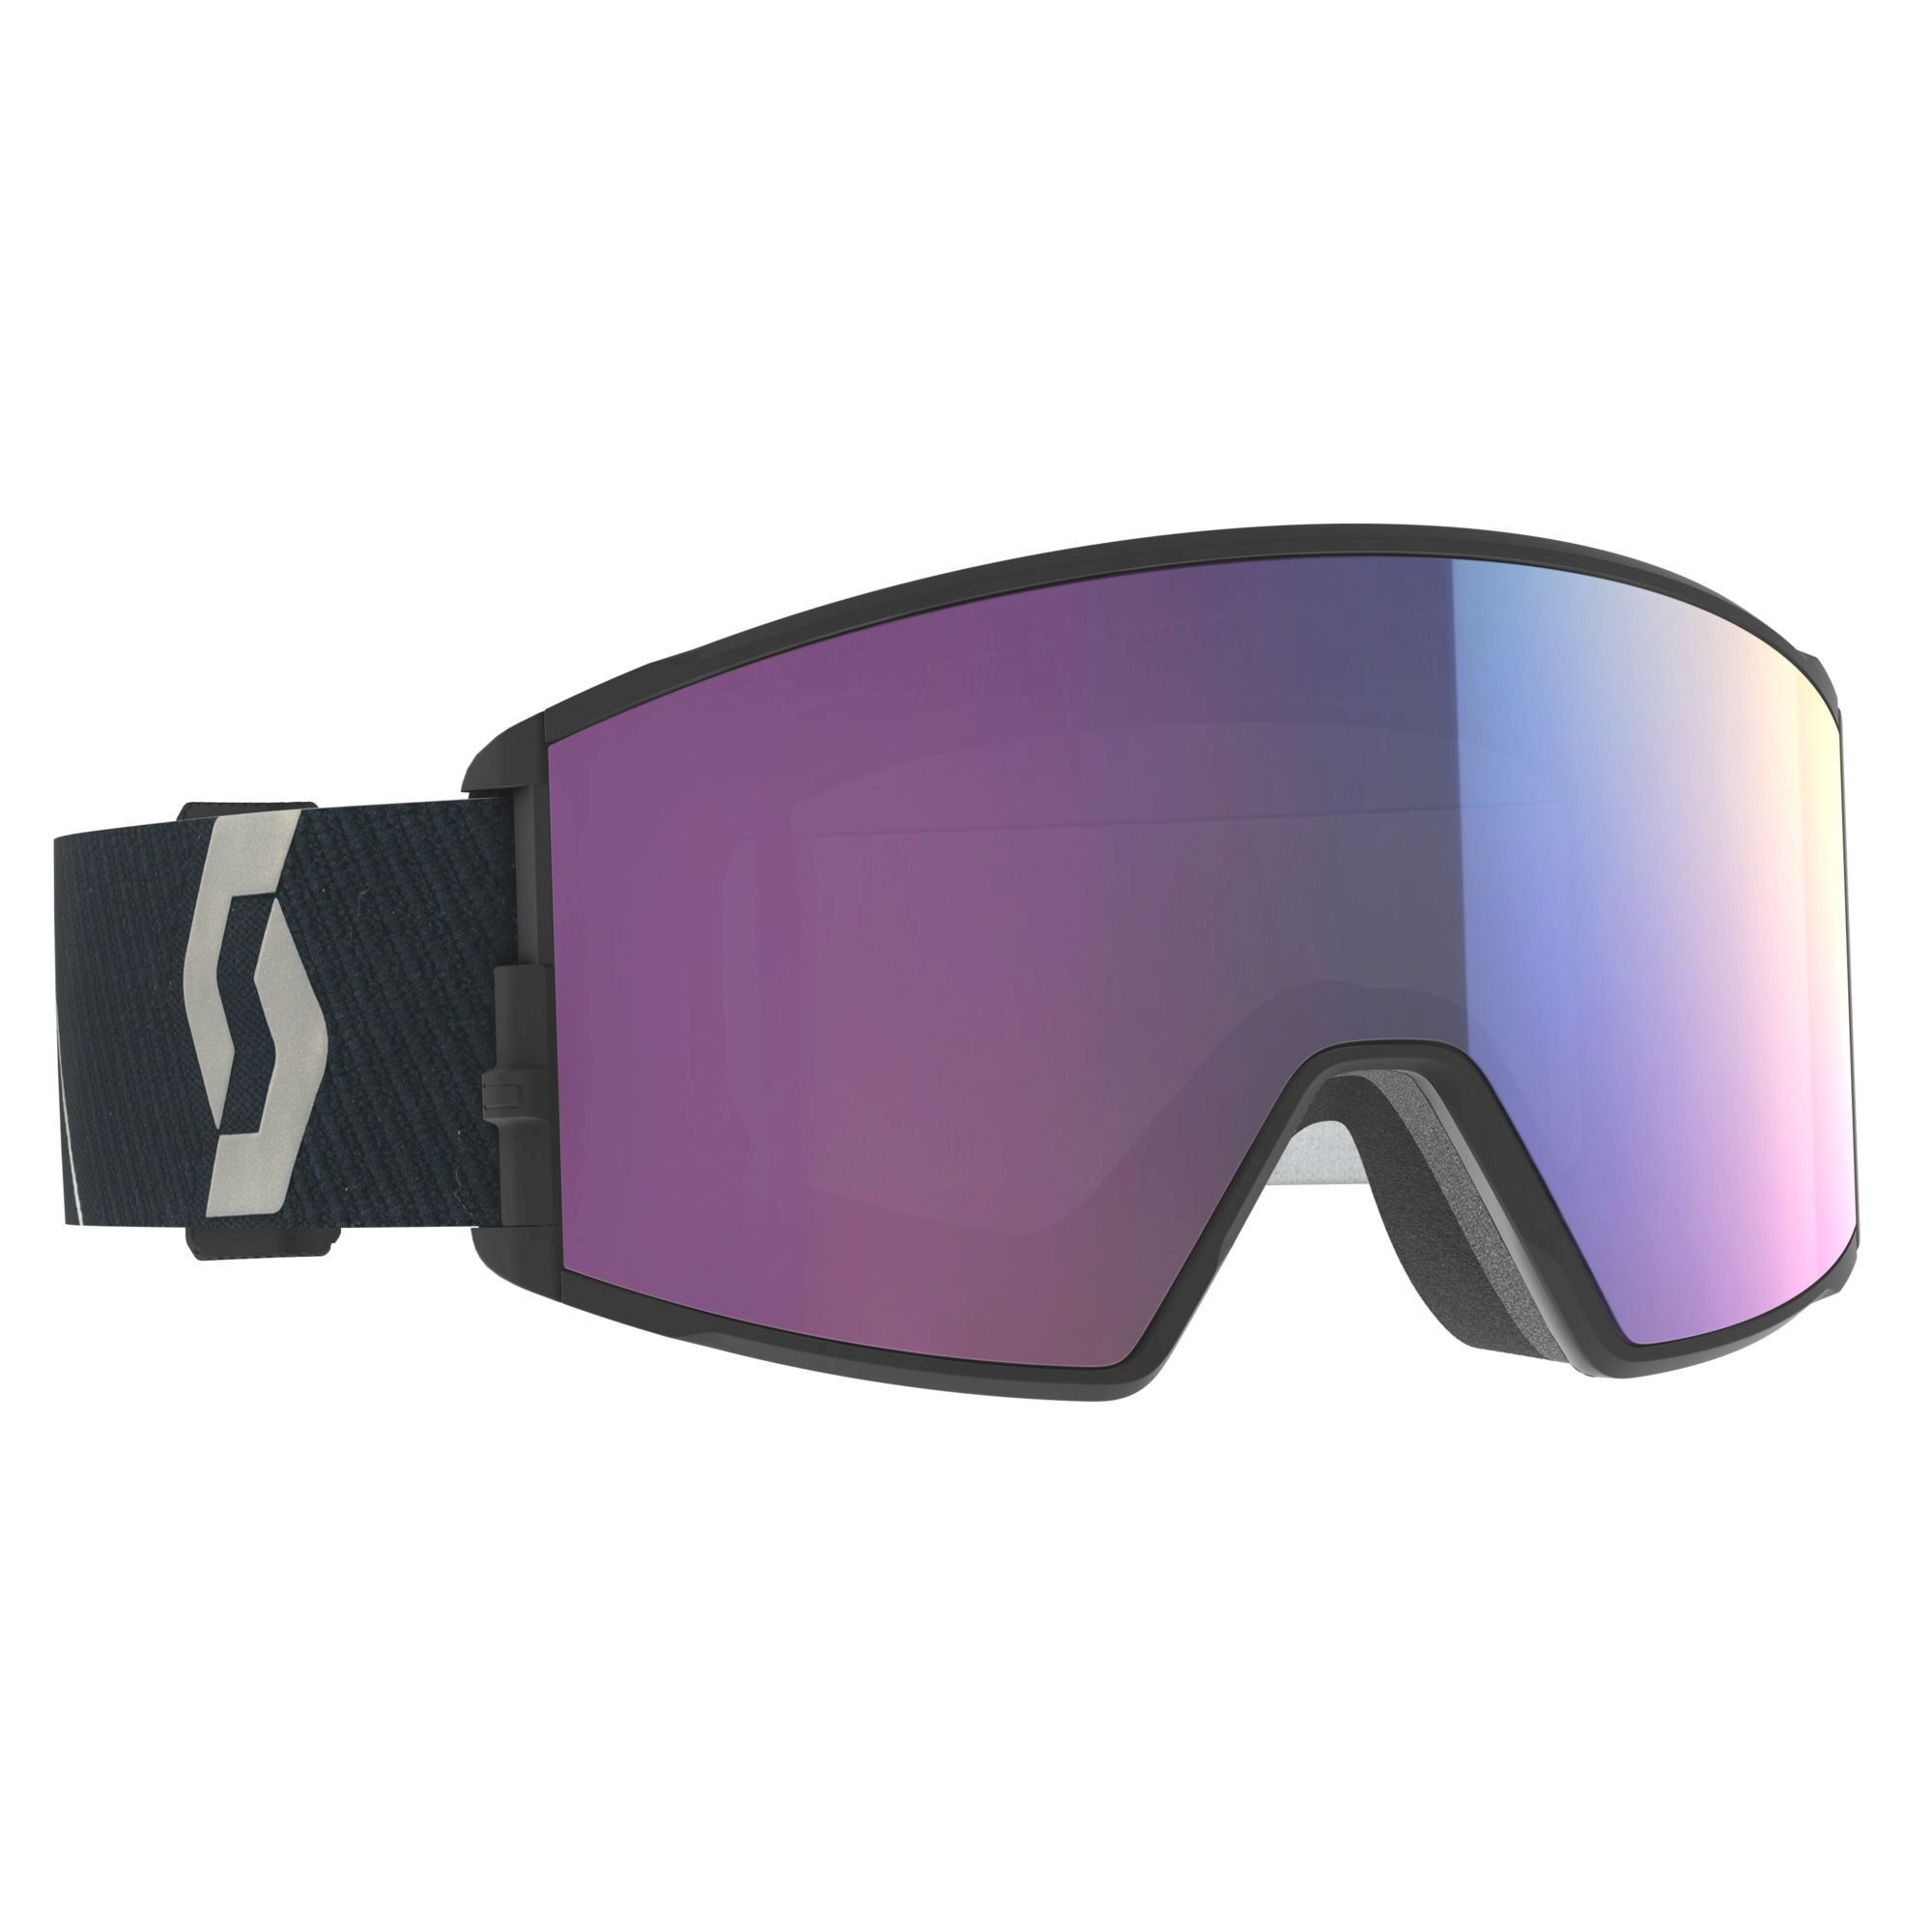 Scott React - Ski goggles